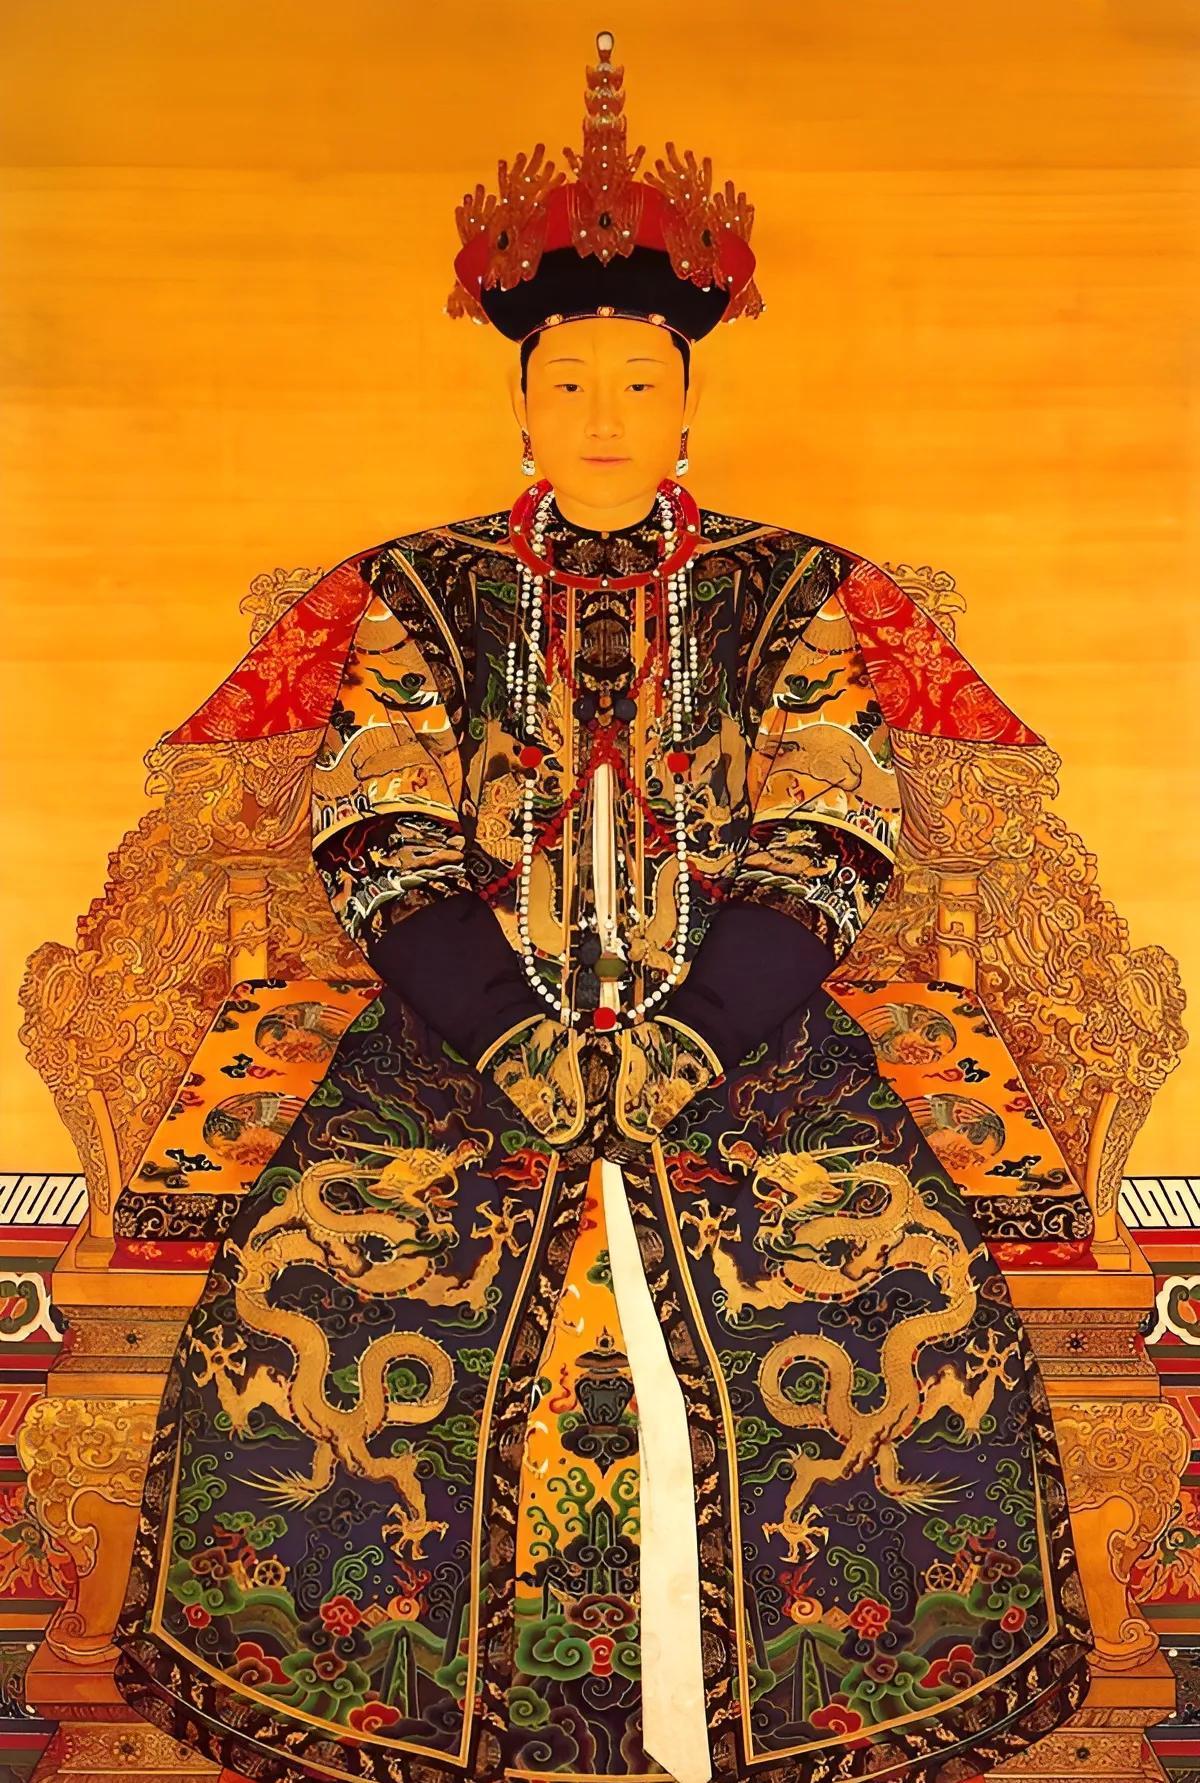 中国历代皇后画像图片